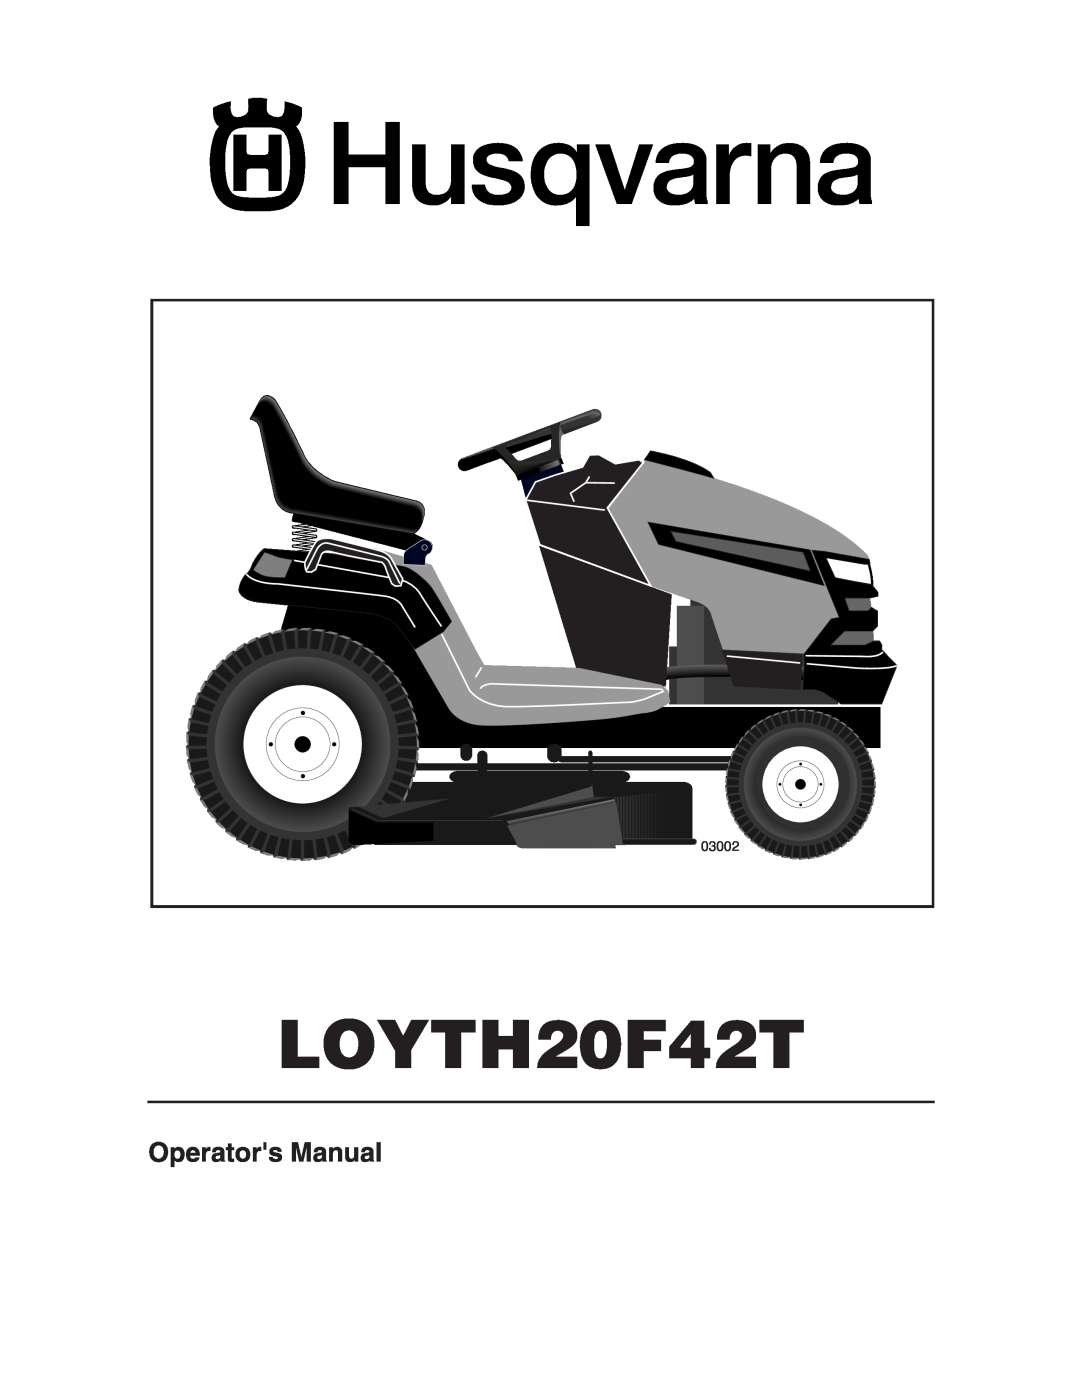 Husqvarna LOYTH20F42T manual Operators Manual, 03002 